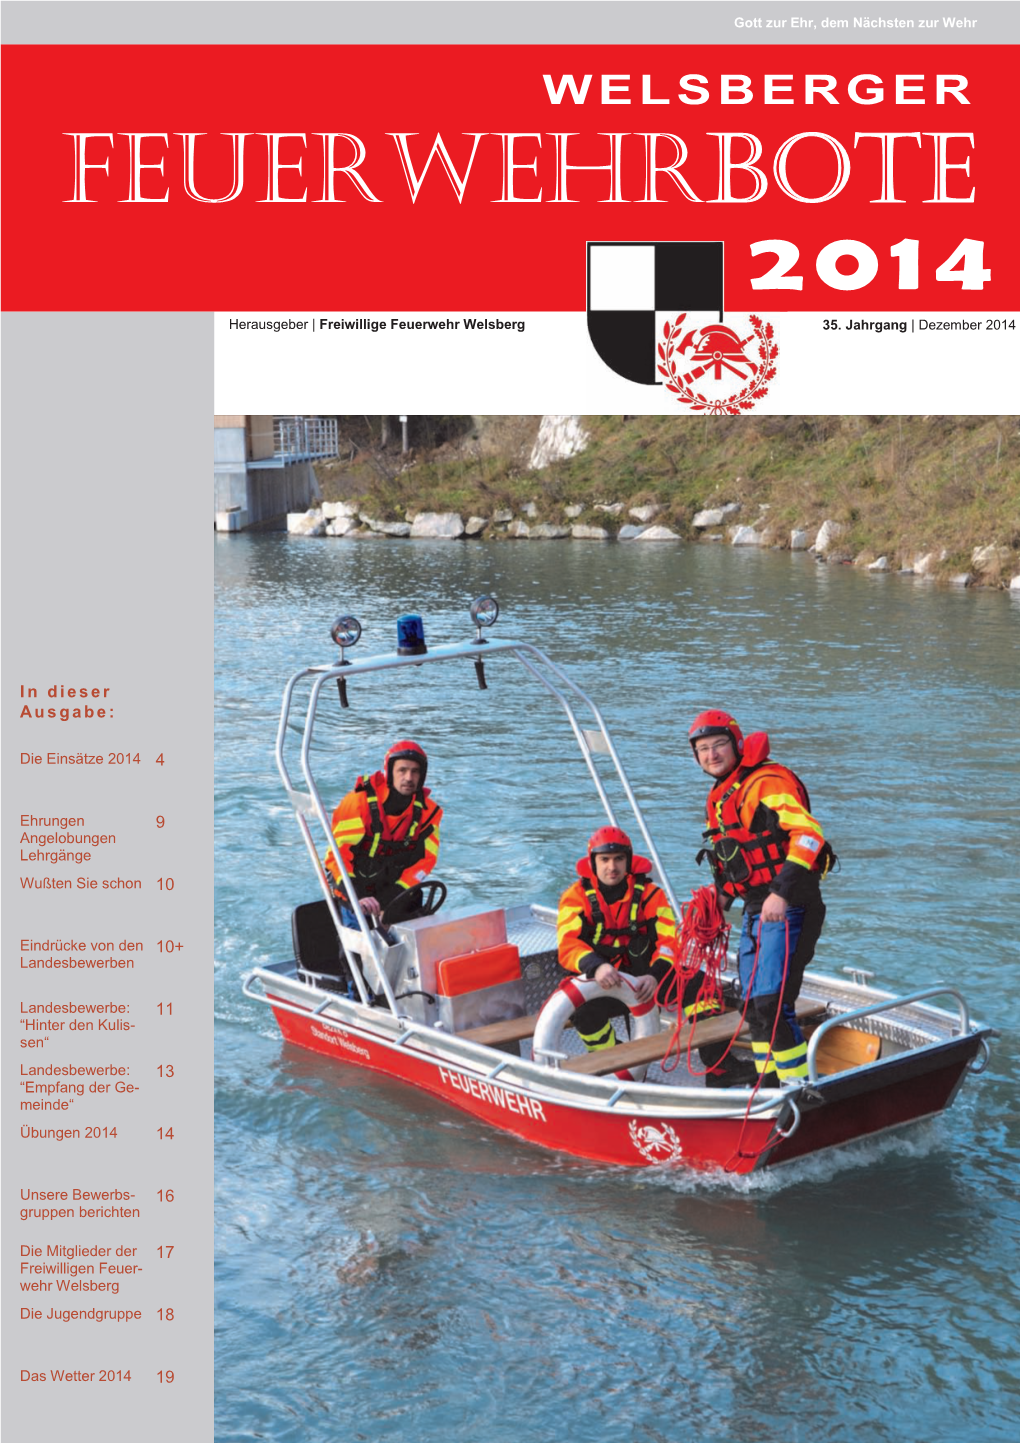 FEUERWEHRBOTE 2014 Herausgeber | Freiwillige Feuerwehr Welsberg 35